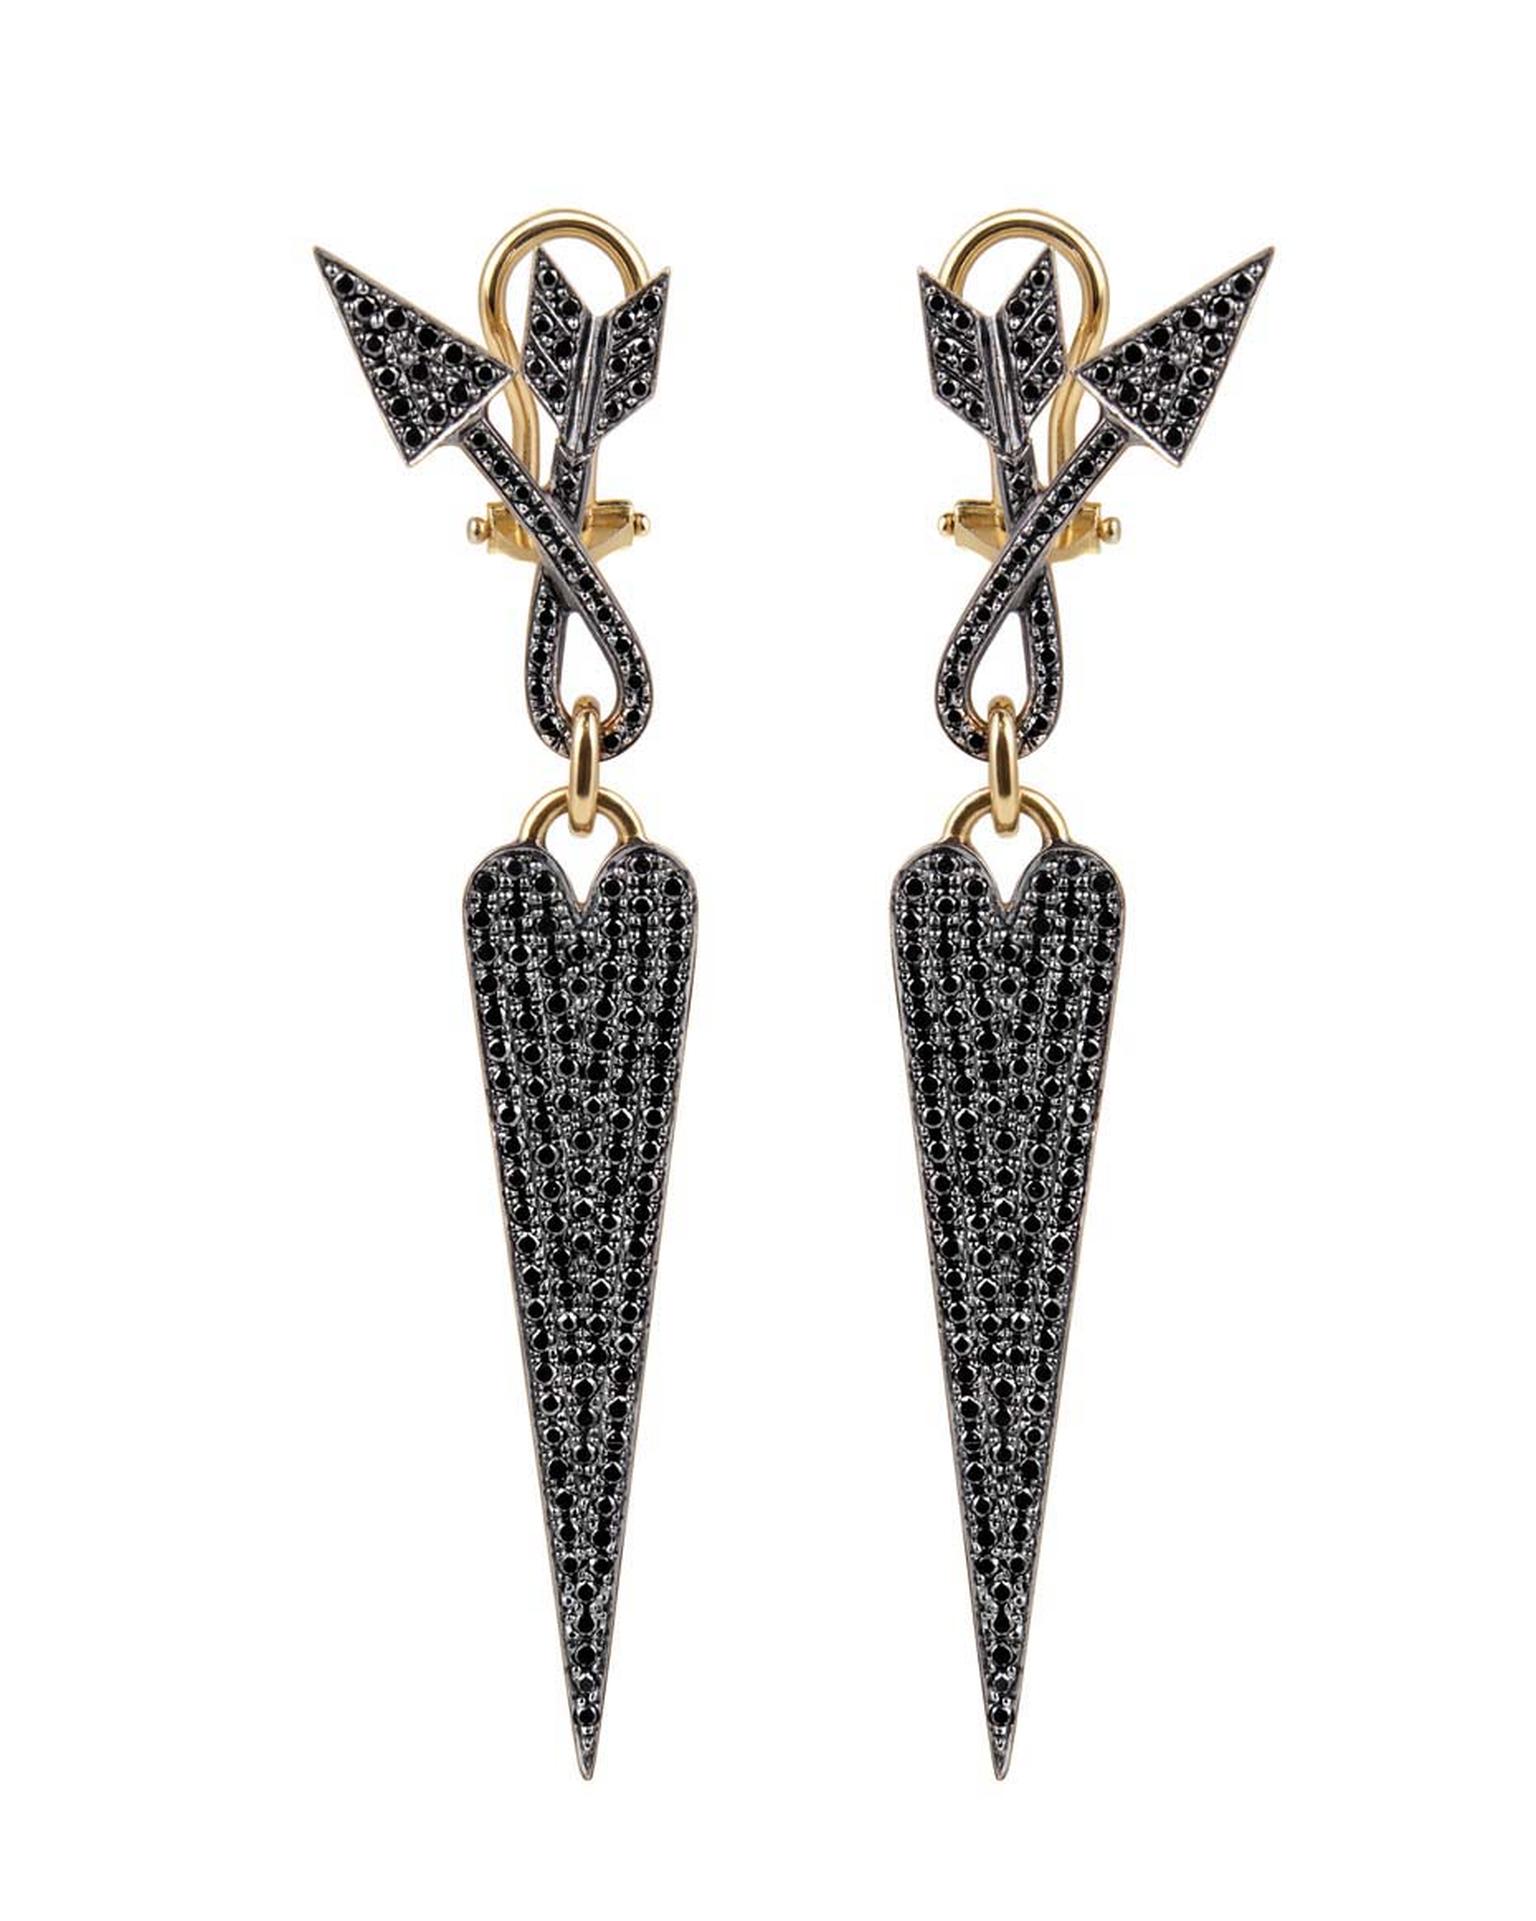 Elena Votsi Twisted Love black diamond earrings